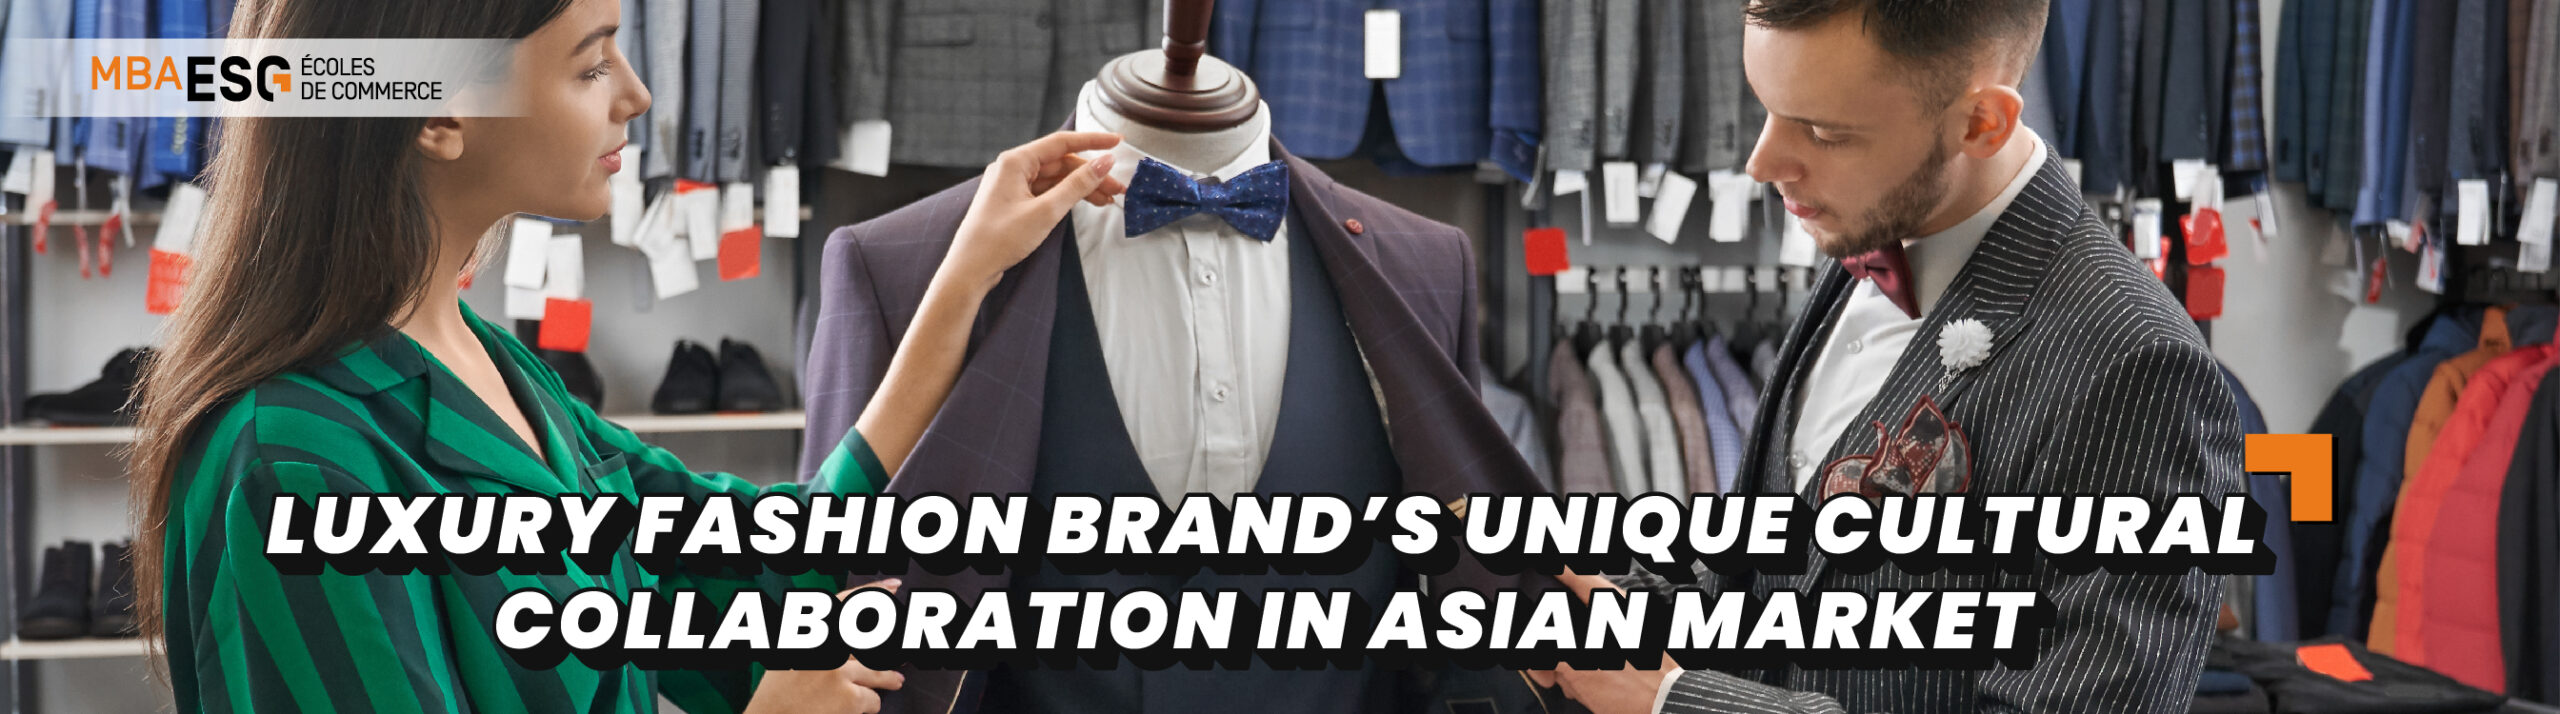 Luxury fashion brand’s unique cultural collaboration in Asian markets